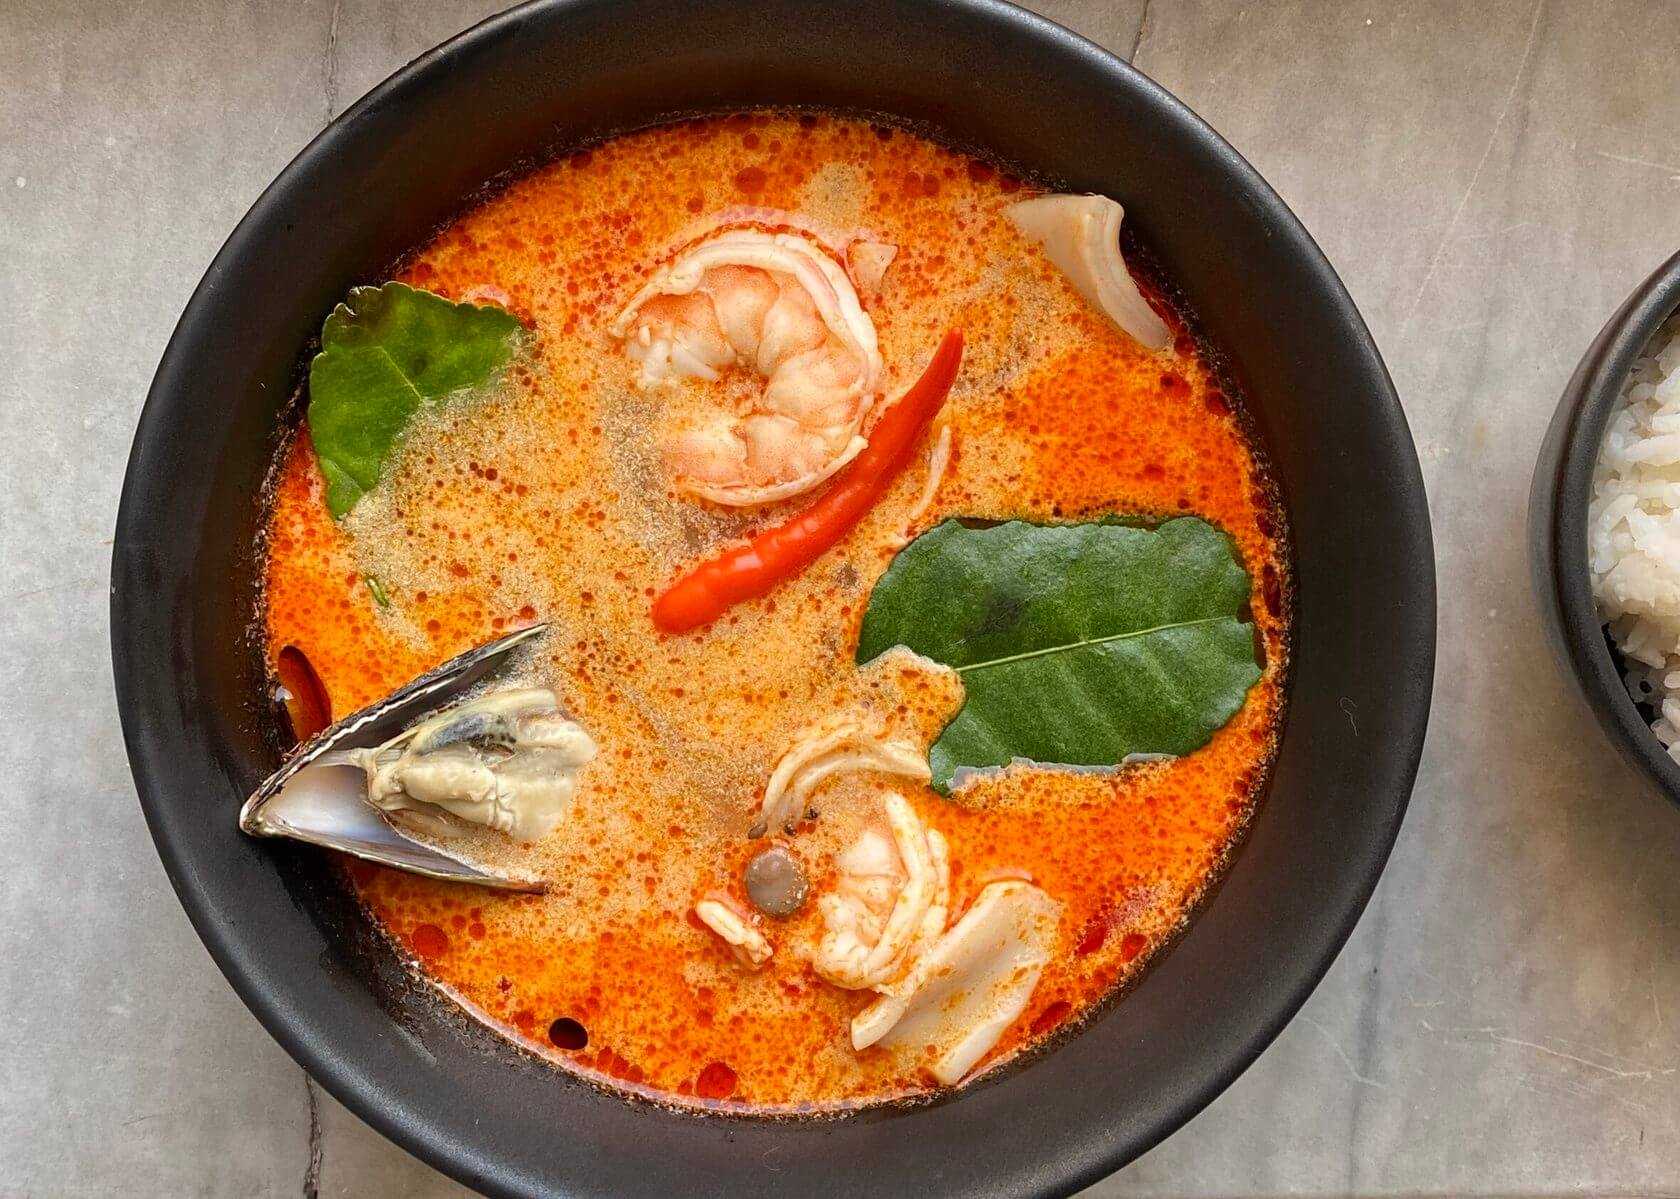 В тайской кухне есть очень популярный суп из морепродуктов — том ям Он считается одним из самых острых в мире, но его легко можно приготовить и в домашних условиях, регулируя остроту и вкус на свое усмотрение Делимся 15 лучшими рецептами